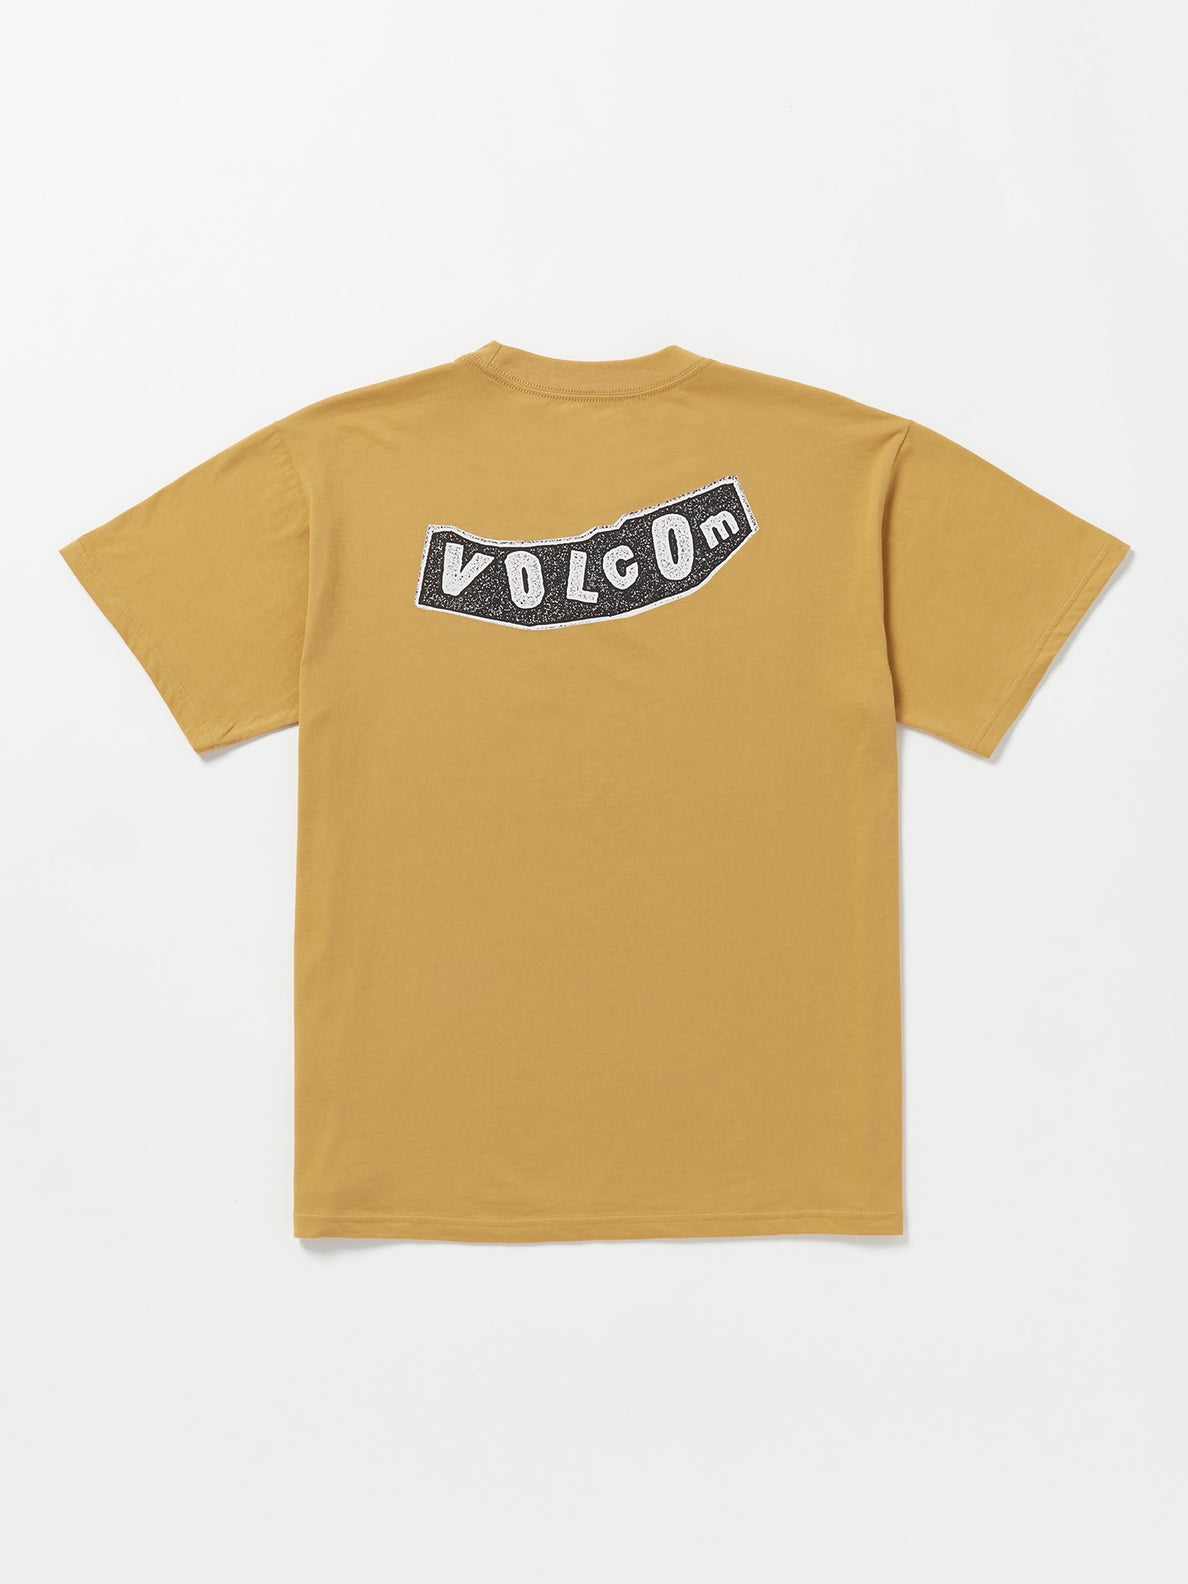 Volcom Skate Vitals Originator Mens T-Shirt - Mustard - ManGo Surfing